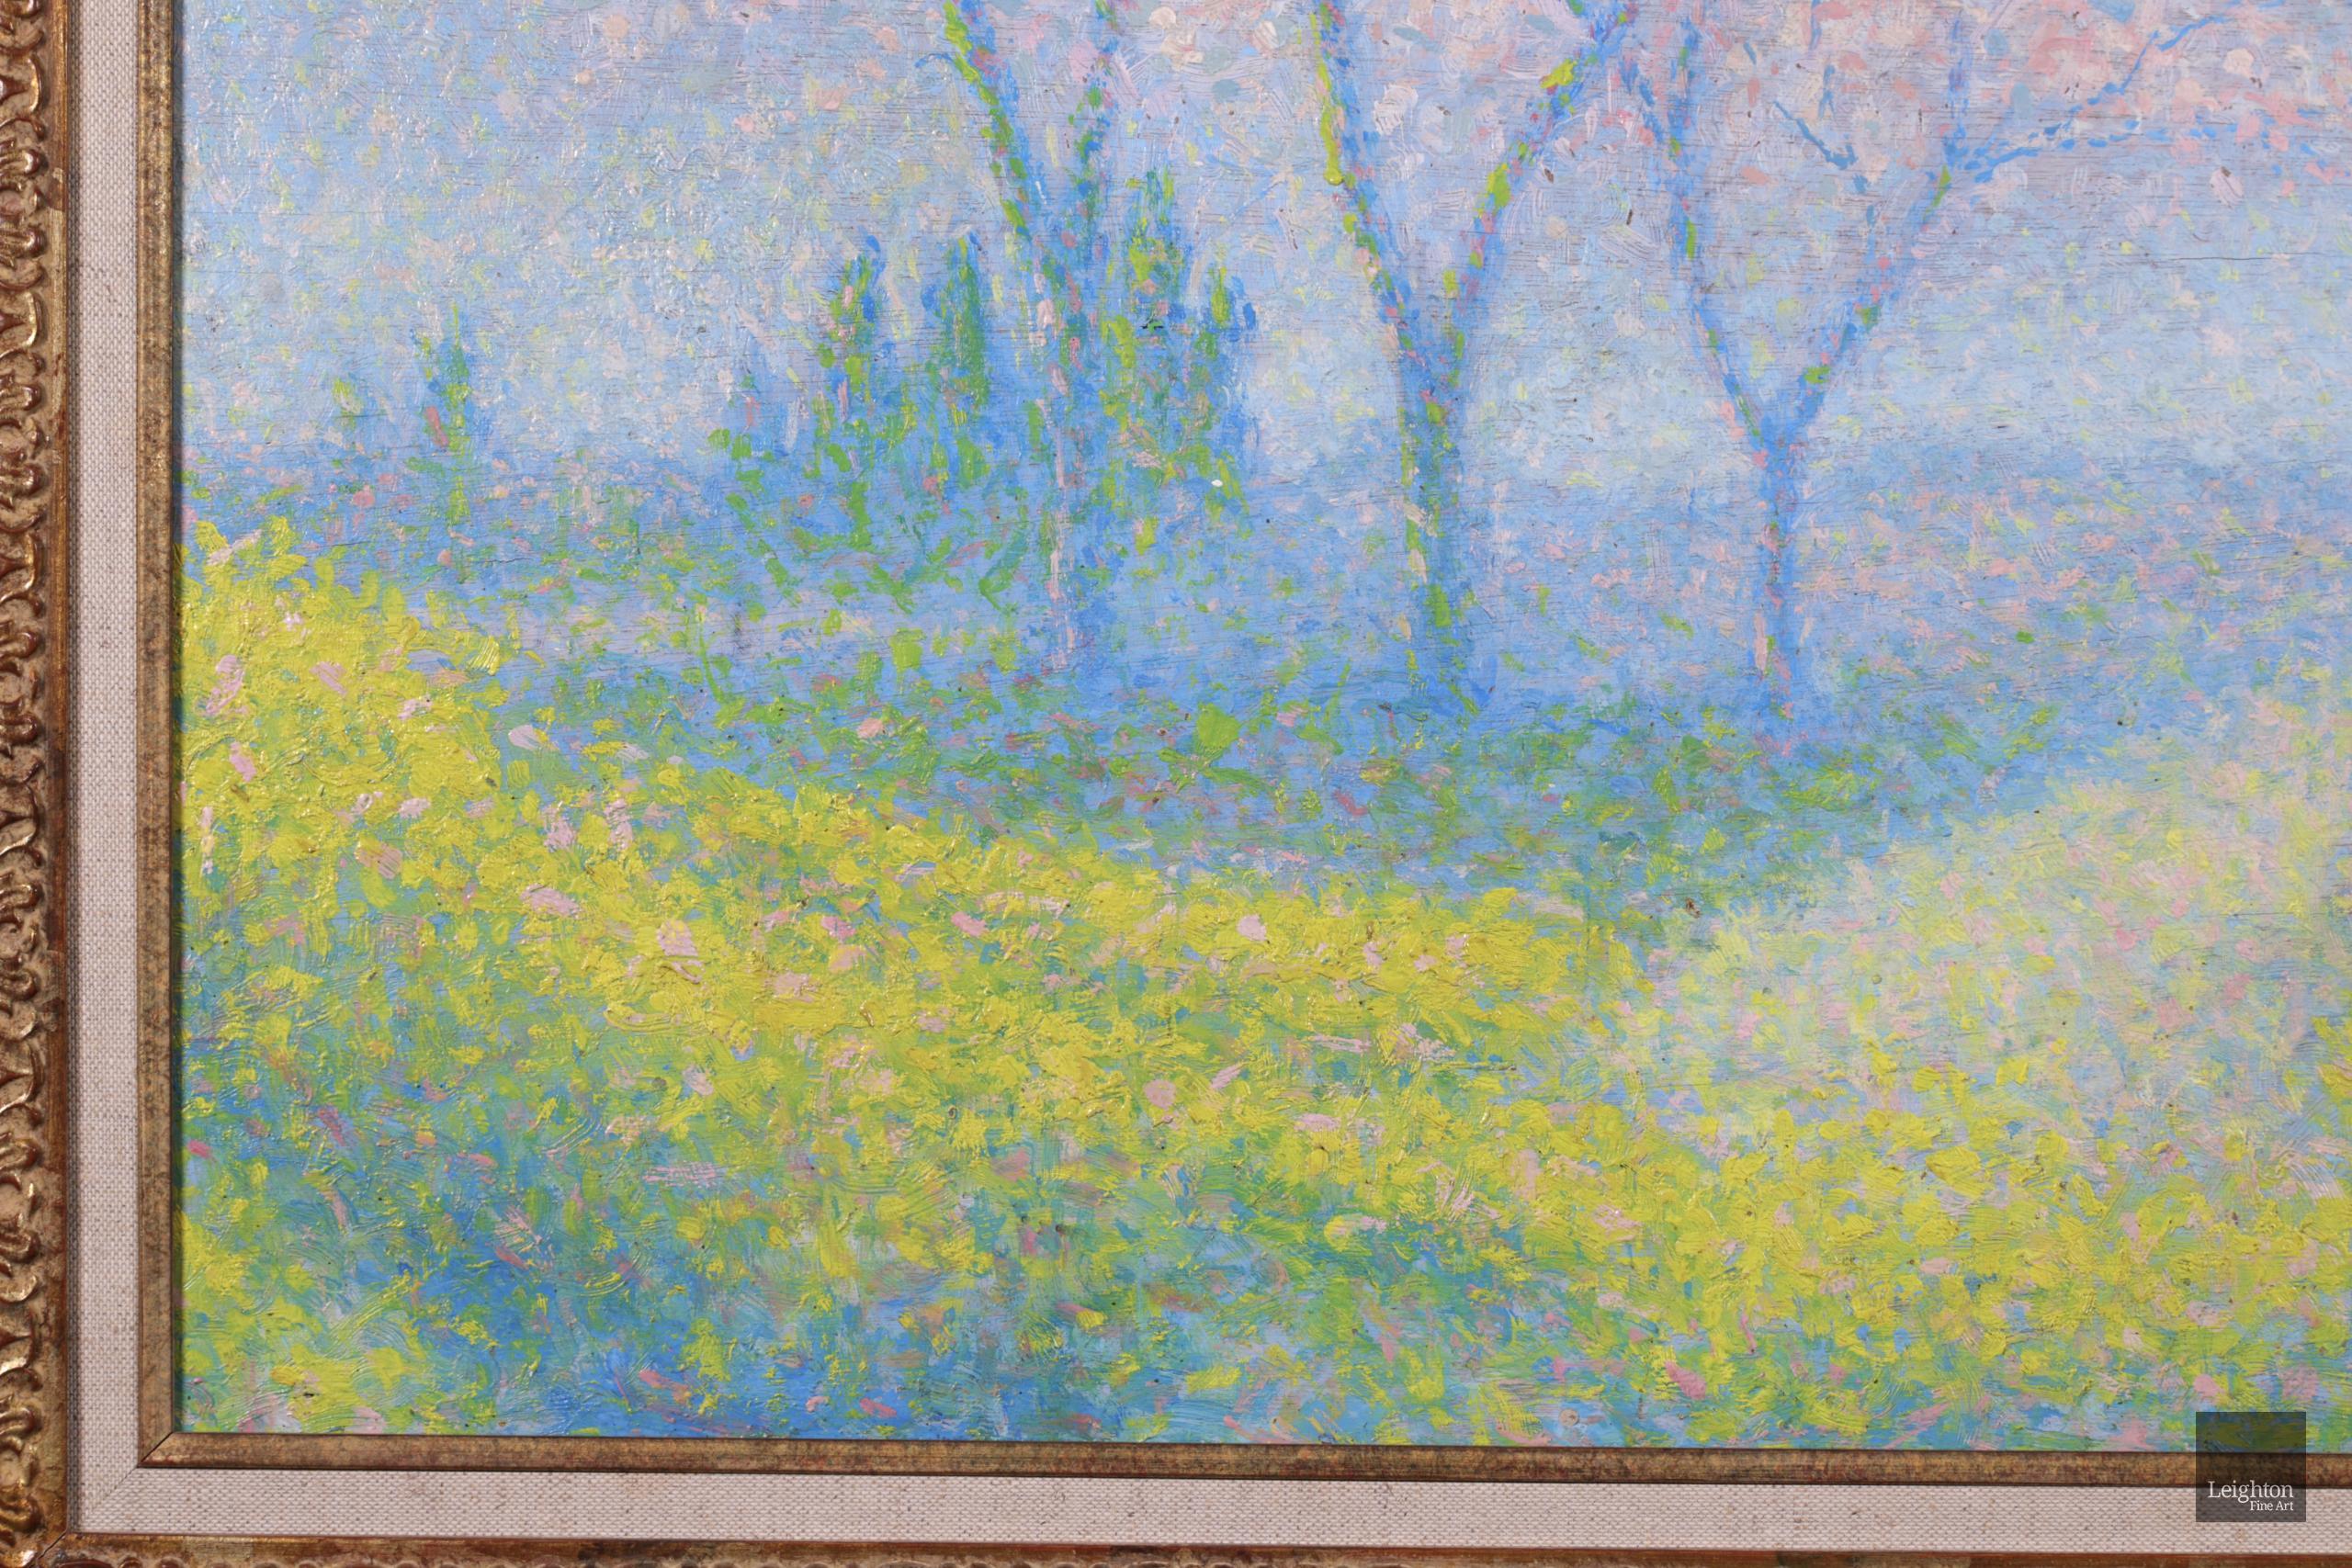 Atemberaubende pointillistische Landschaft Öl auf Platte circa 1920 von Französisch neo-impressionistischen Maler Achille Lauge. Das Werk stellt eine Frühlingslandschaft dar. In der Mitte stehen drei hohe Bäume, die weiß und rosa blühen. Die Bäume